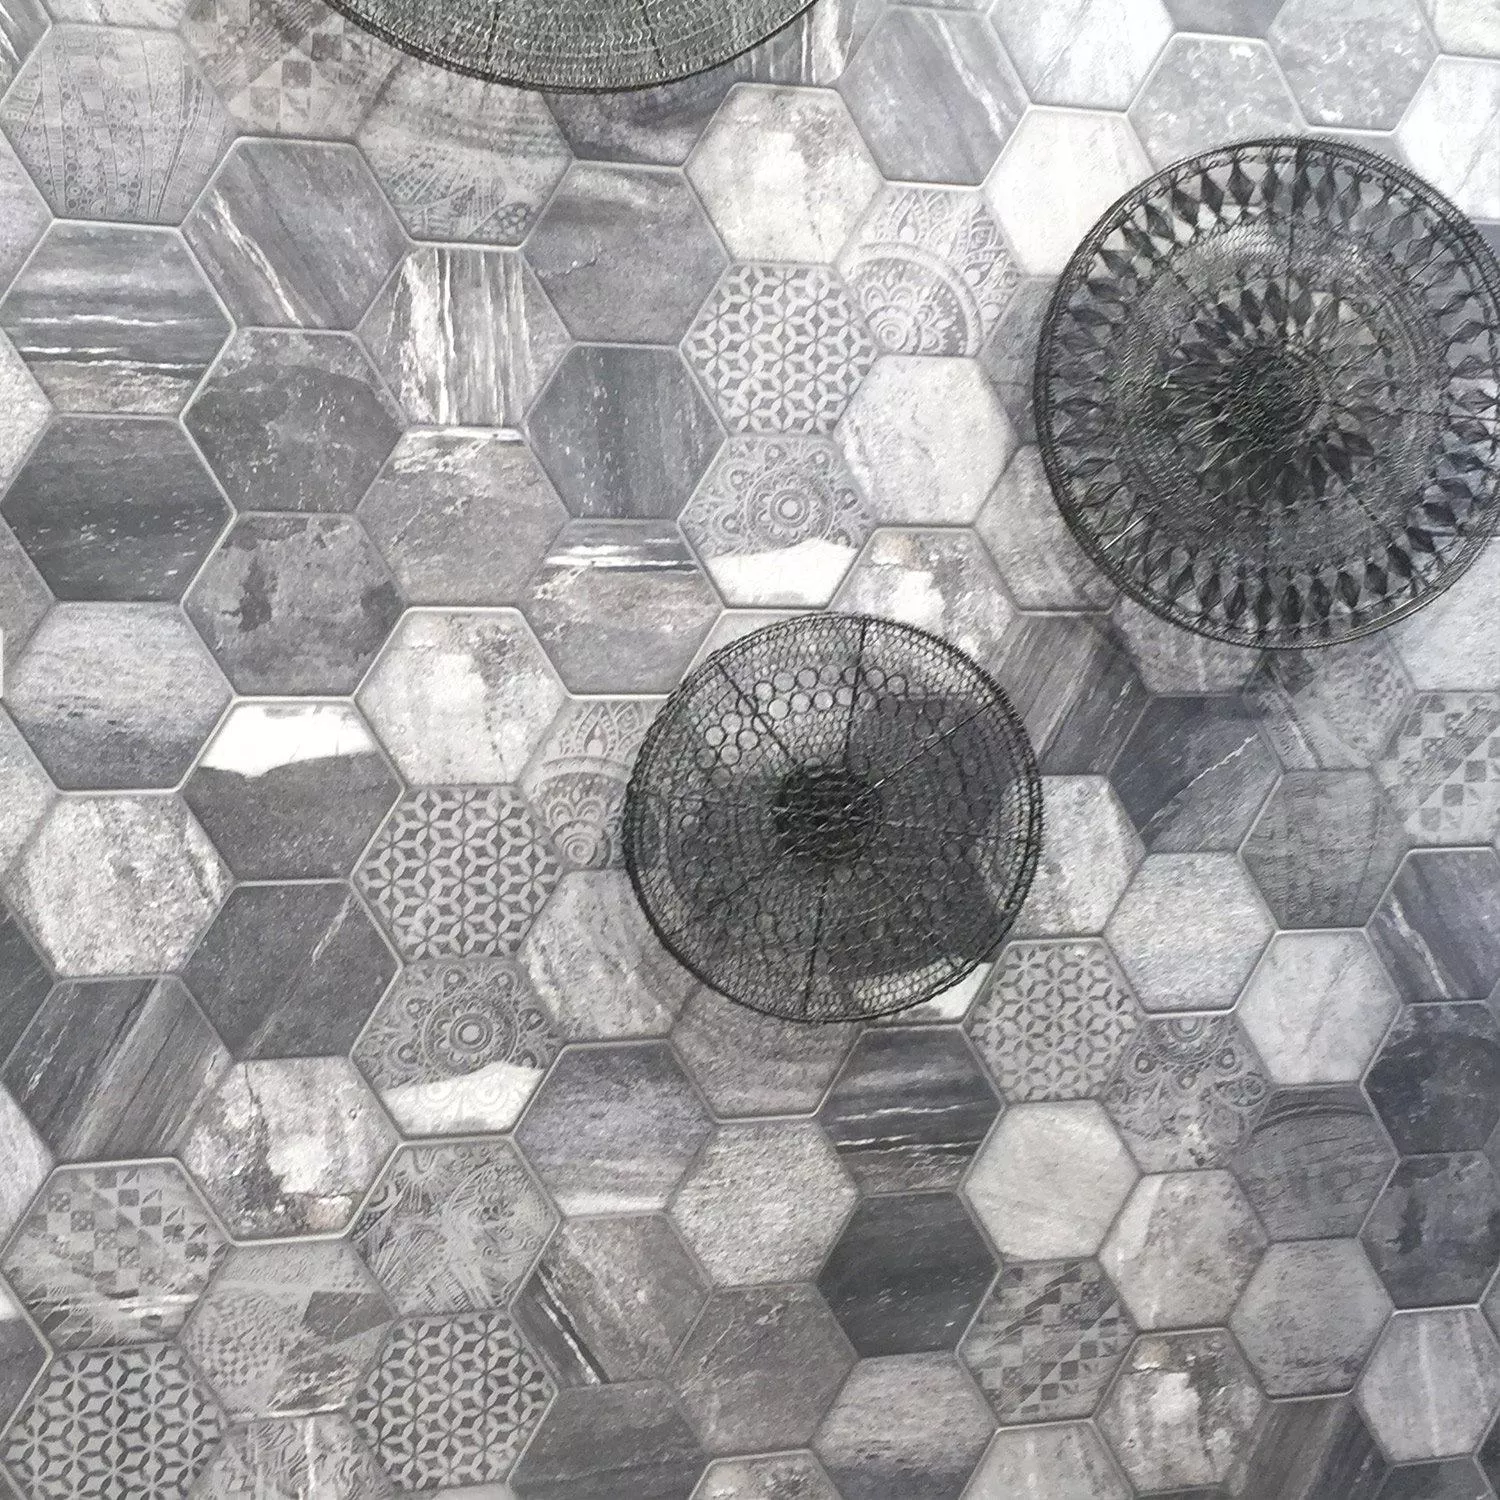 Sample Hexagon Floor Tiles 45x45cm